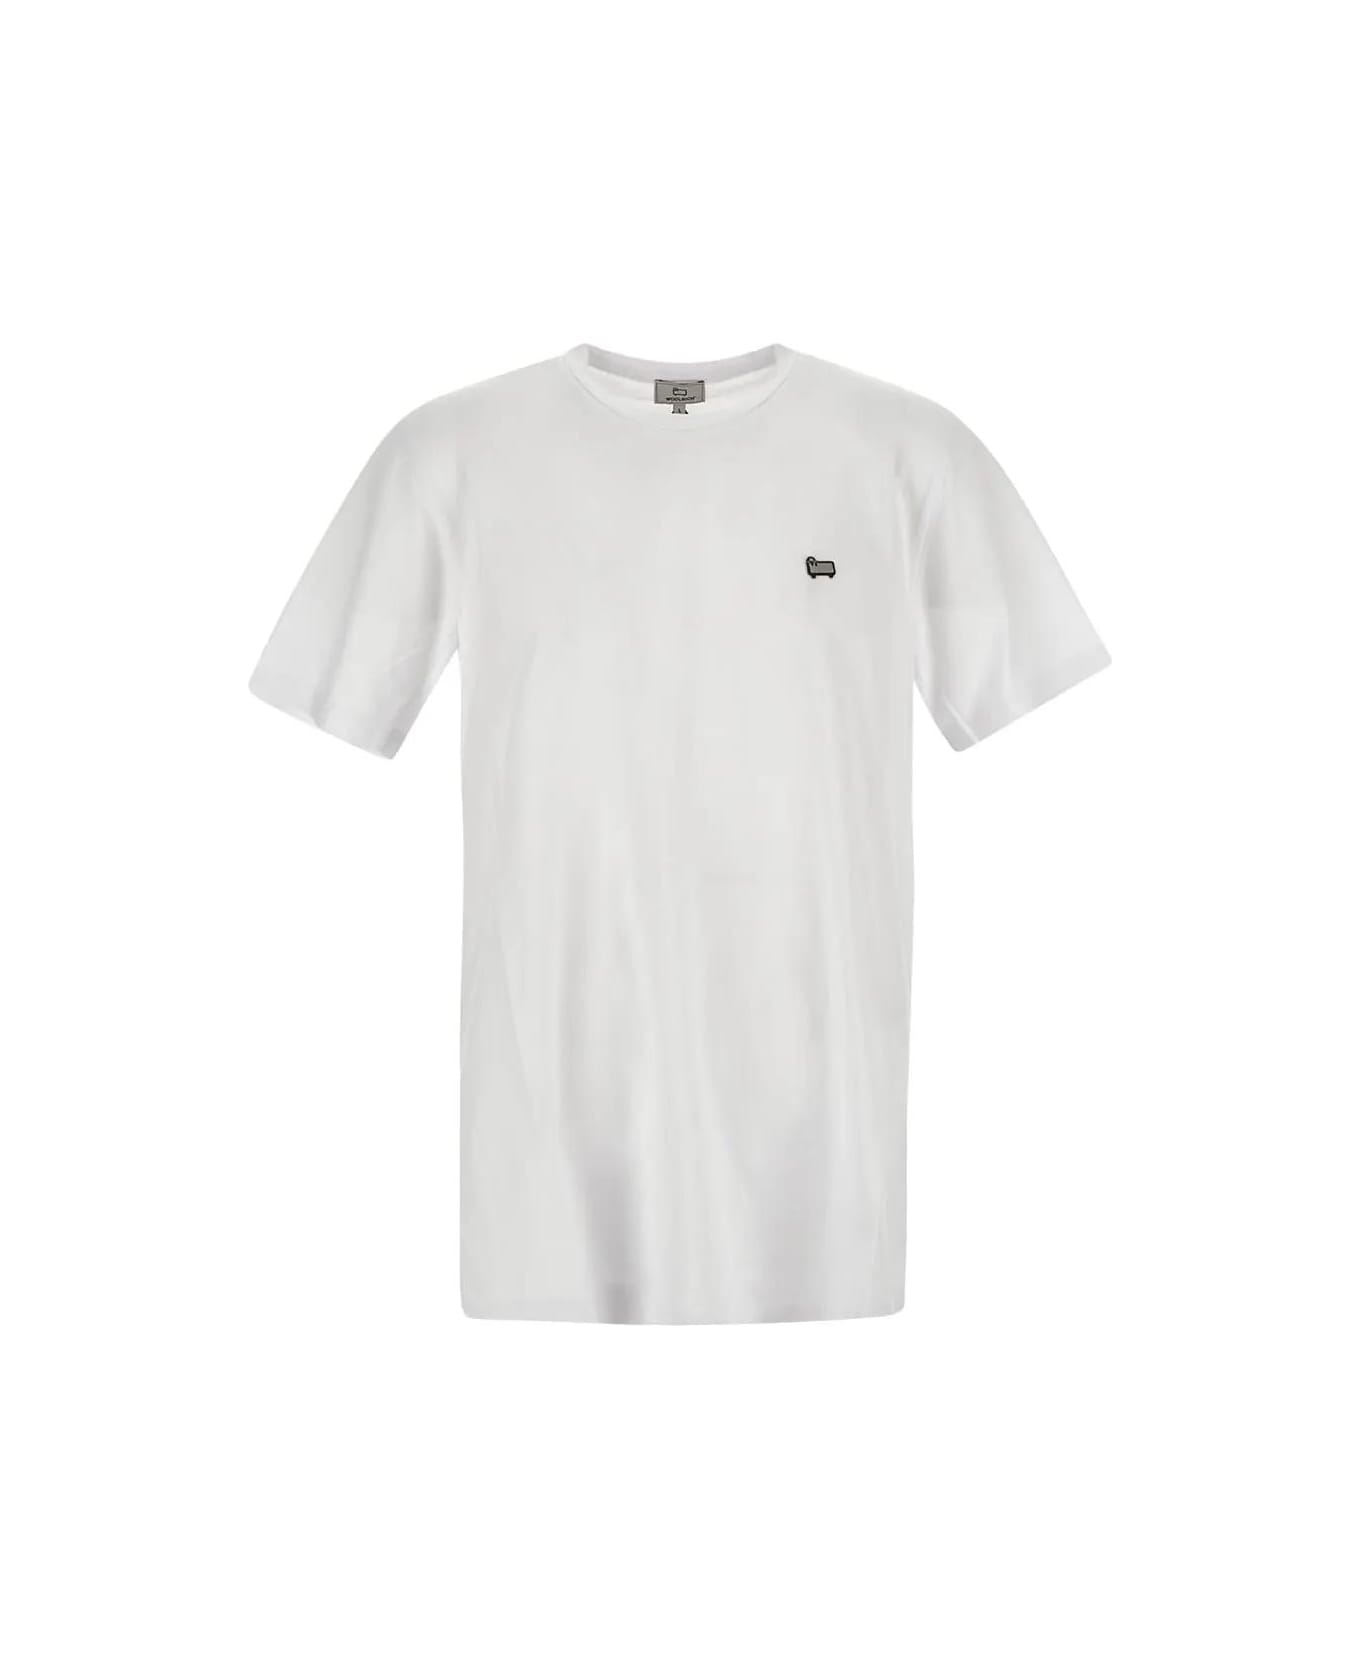 Woolrich Sheep T-shirt - White